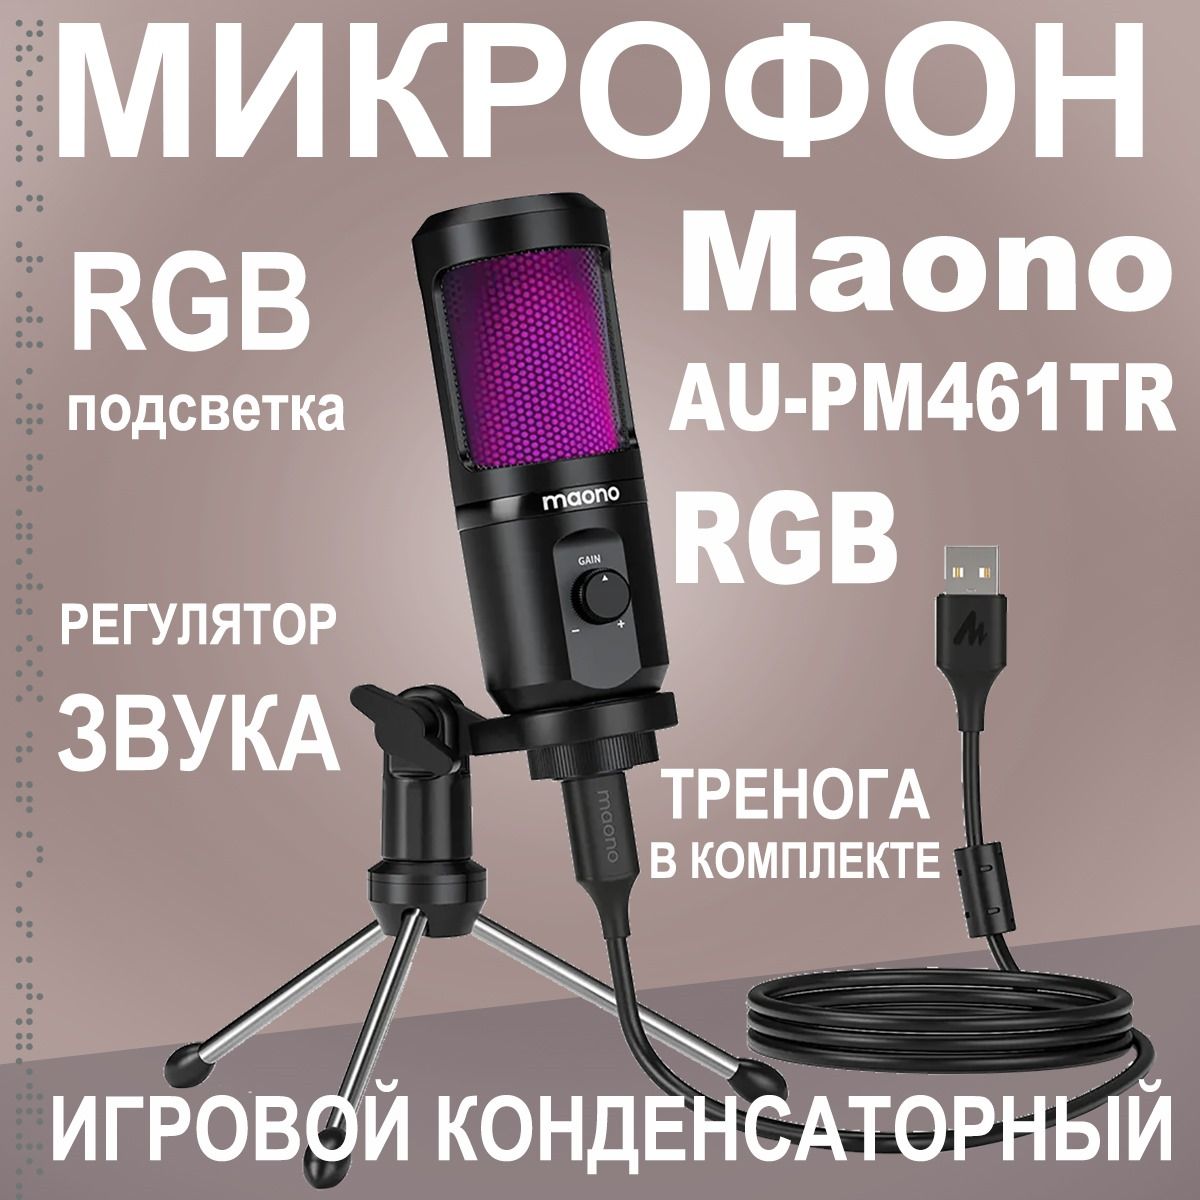 MAONOМикрофонигровой(длястриминга)AU-PM461TRRGB,черный